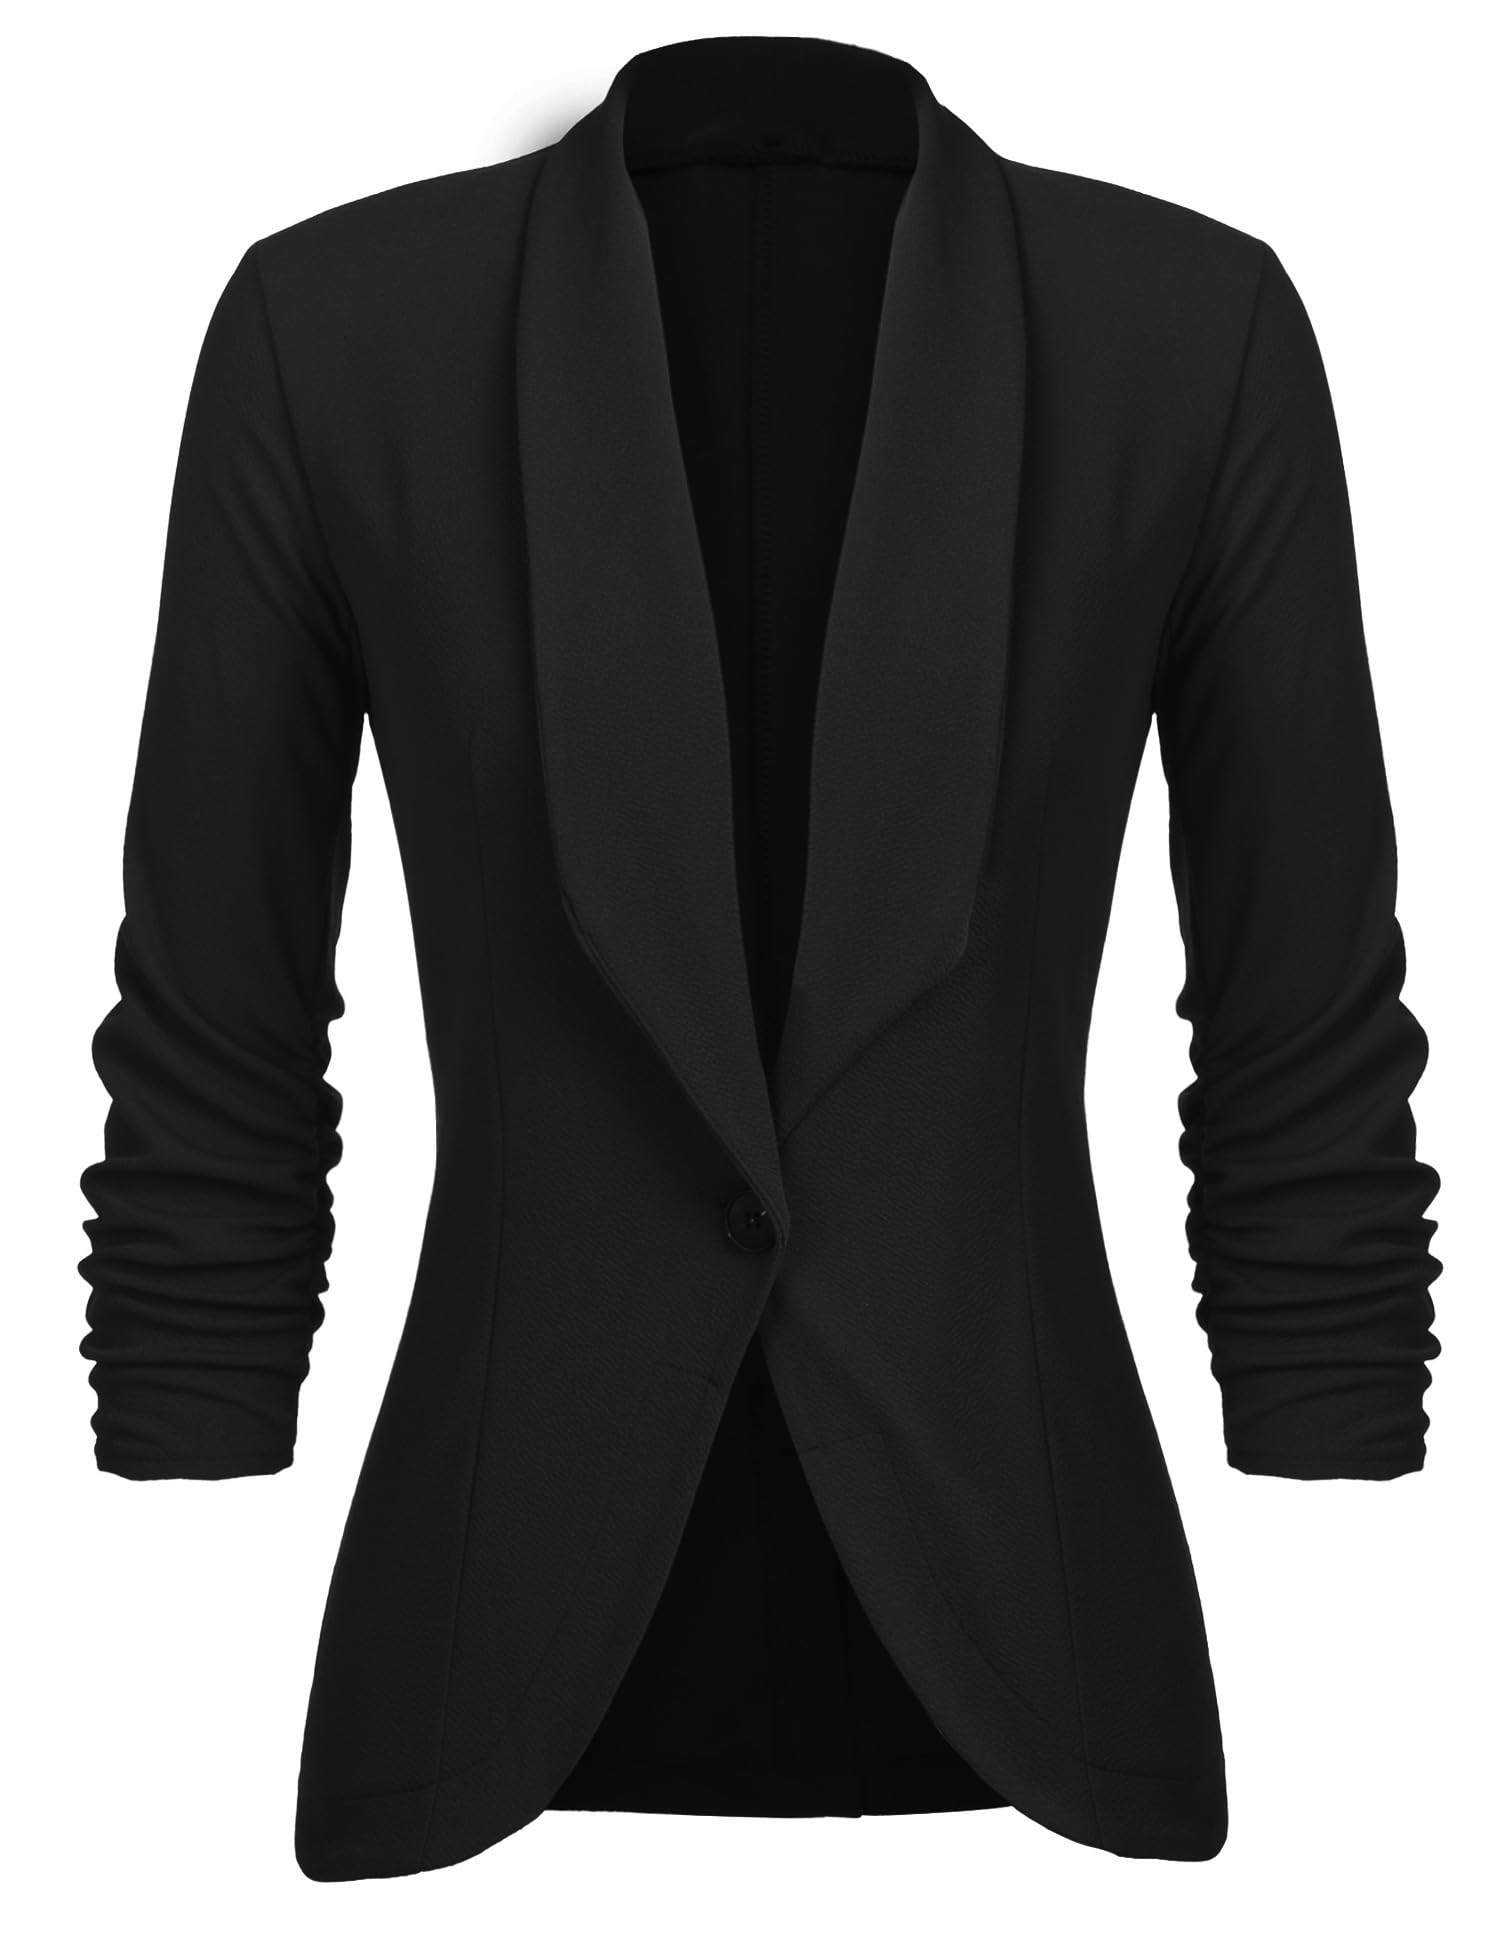 Unibelle Damen Blazer Cardigan Dünn 3/4 Längere Elegant Leicht Bolero Jacke Blazer Slim Fit Anzug Trenchcoat , A-schwarz, 36(Herstellergröße:S)